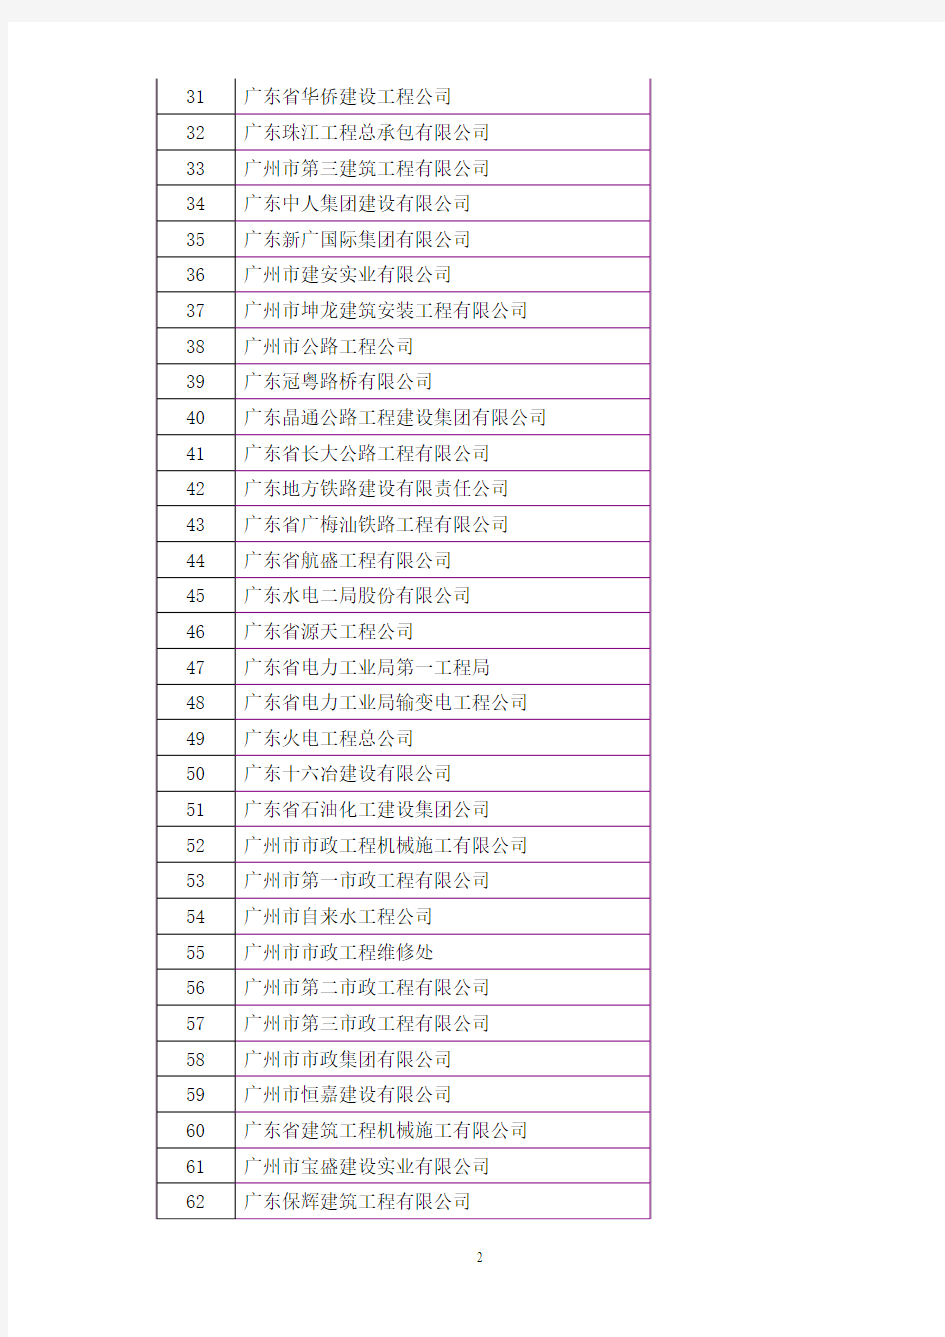 省属和广州市特级,一级建筑企业名单